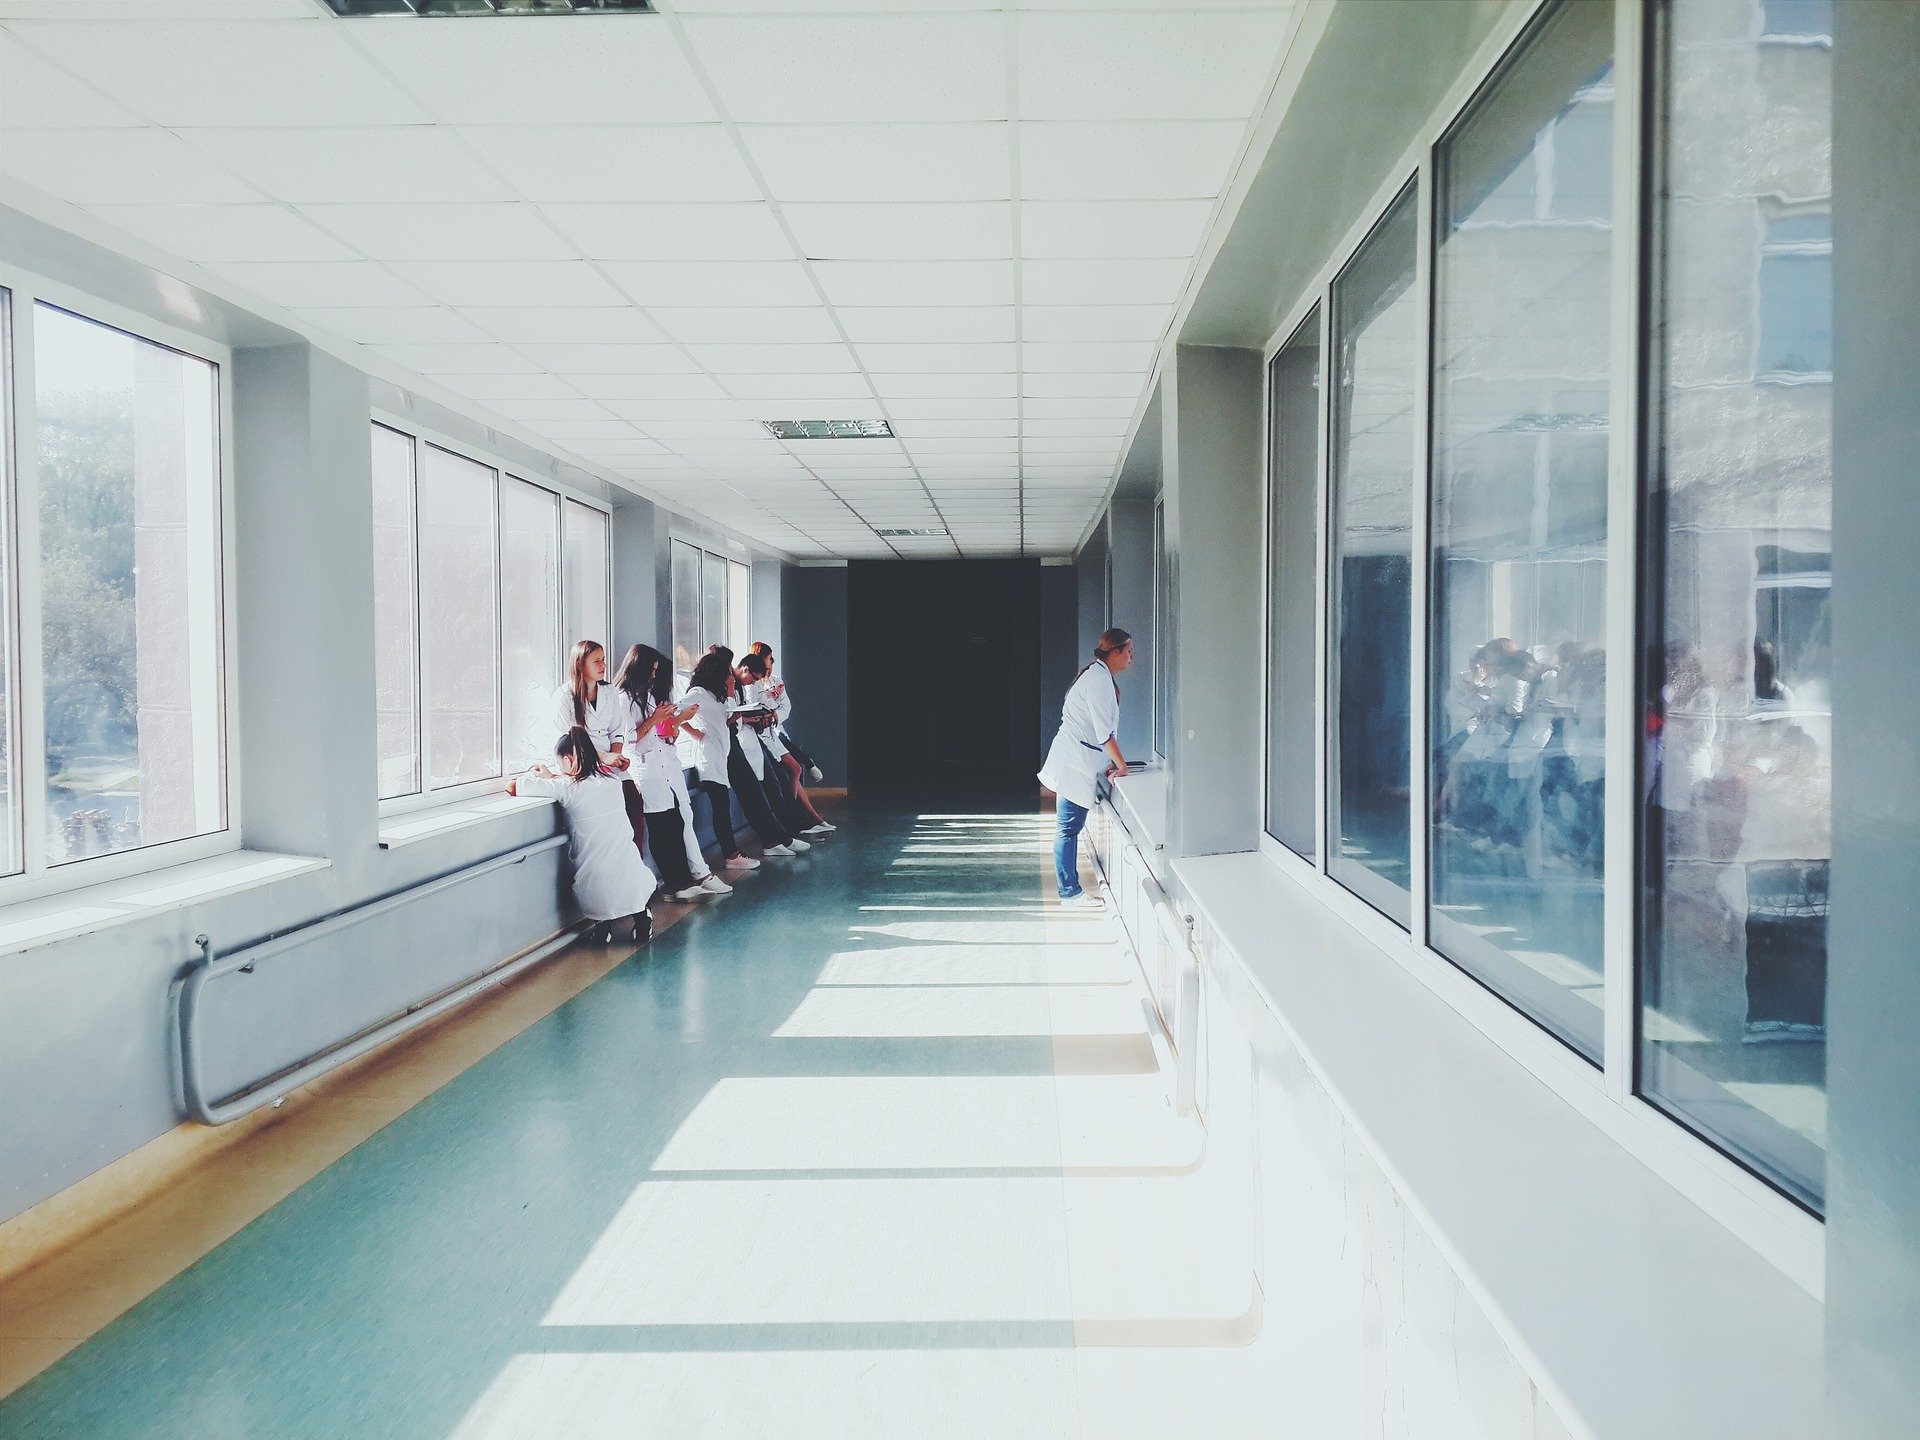 Médicos esperan en el pasillo de un hospital. | Foto: Pixabay